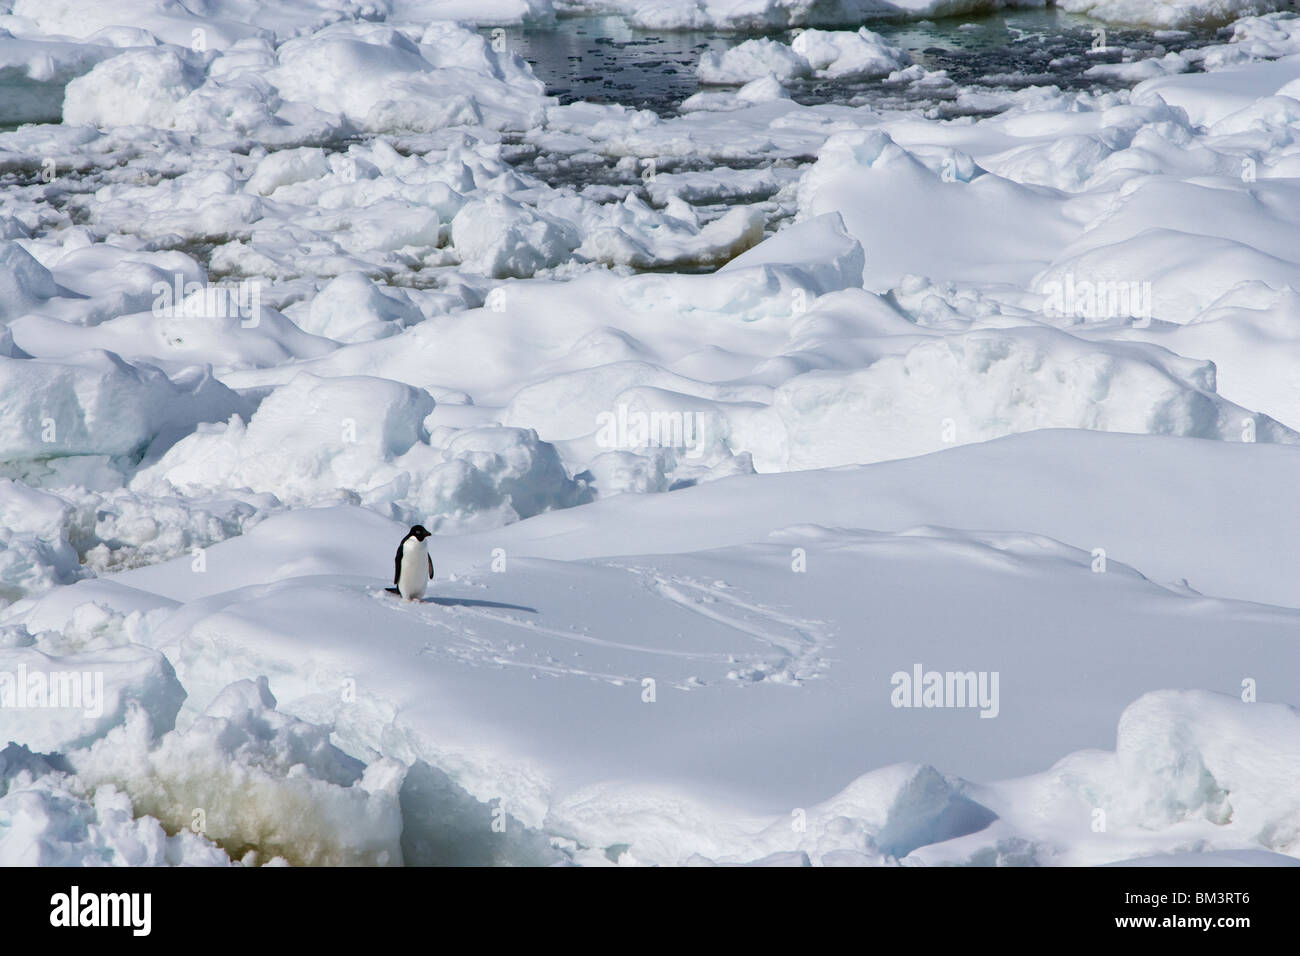 Seul Mignon pingouin Adélie debout sur la glace enneigée à perdu à la fin de son sentier dans la neige flottante recouverte de glace en Antarctique Banque D'Images